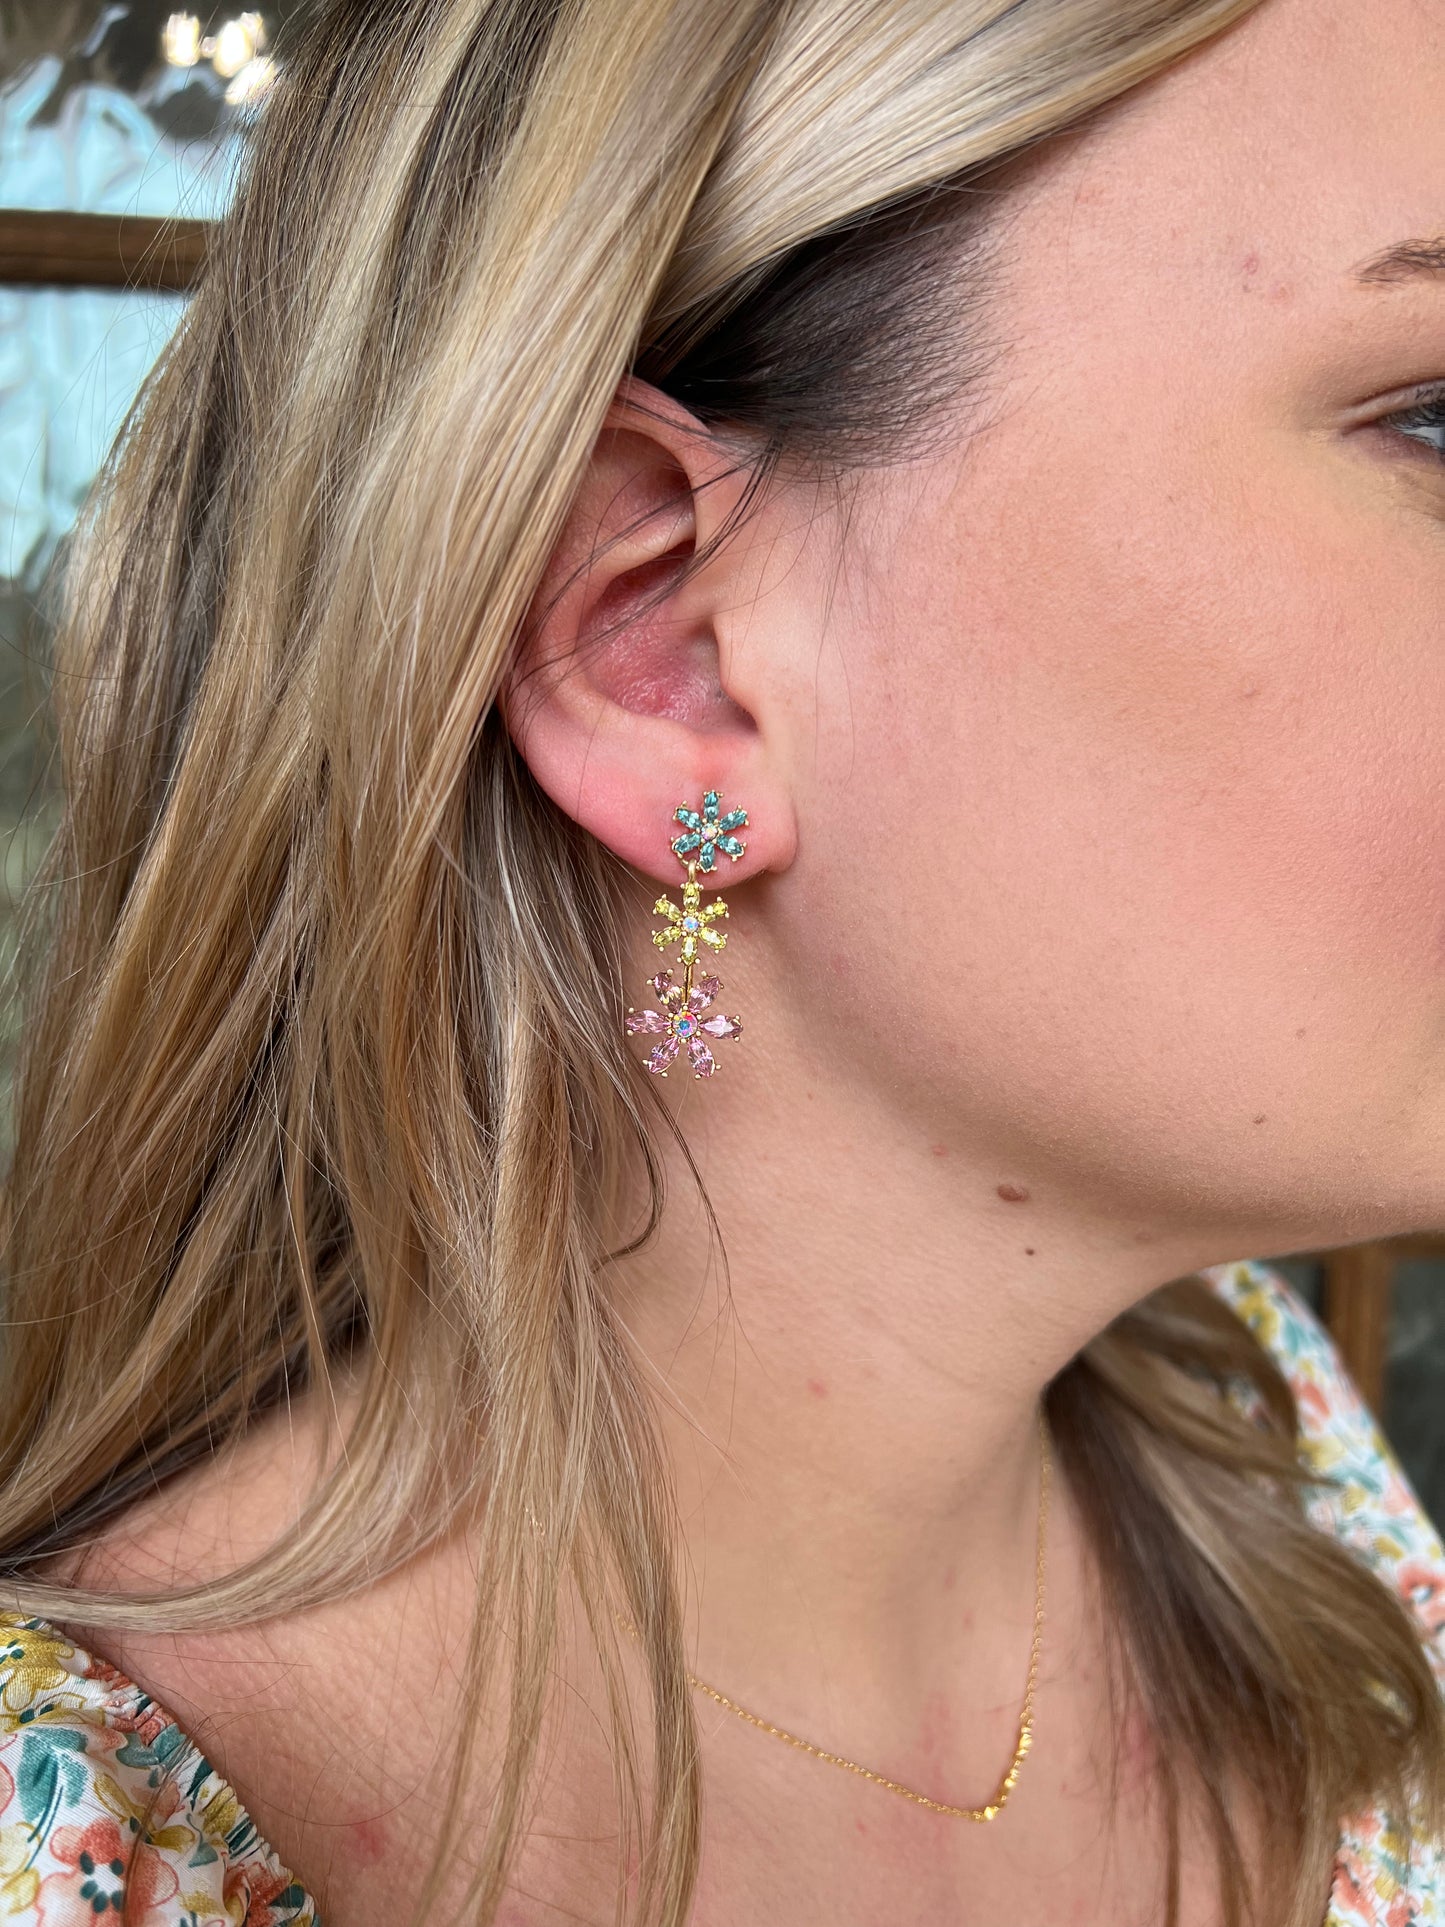 Flower crystal drop earrings - 2 colors